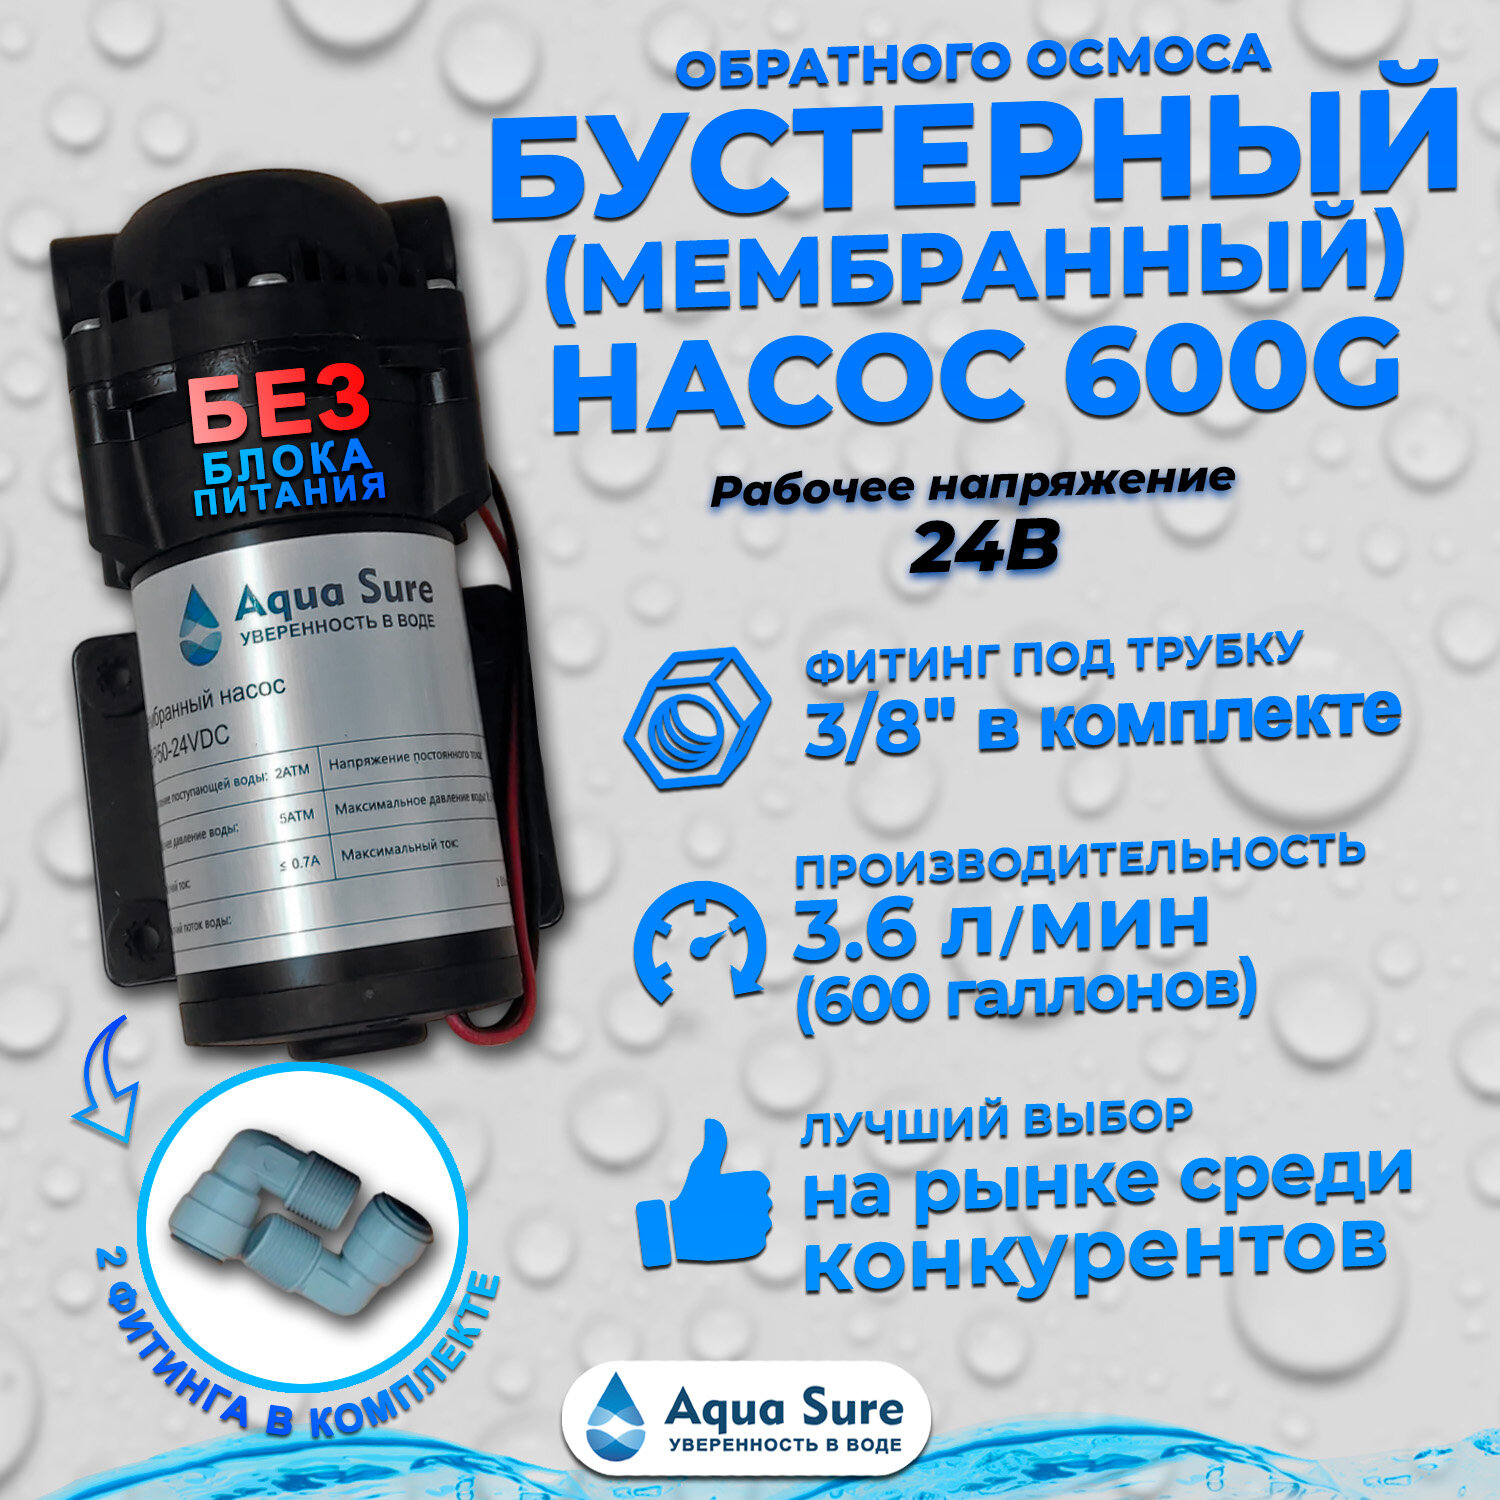 Бустерный (мембранный) насос Aqua Sure ABP 600G-24V без блока питания